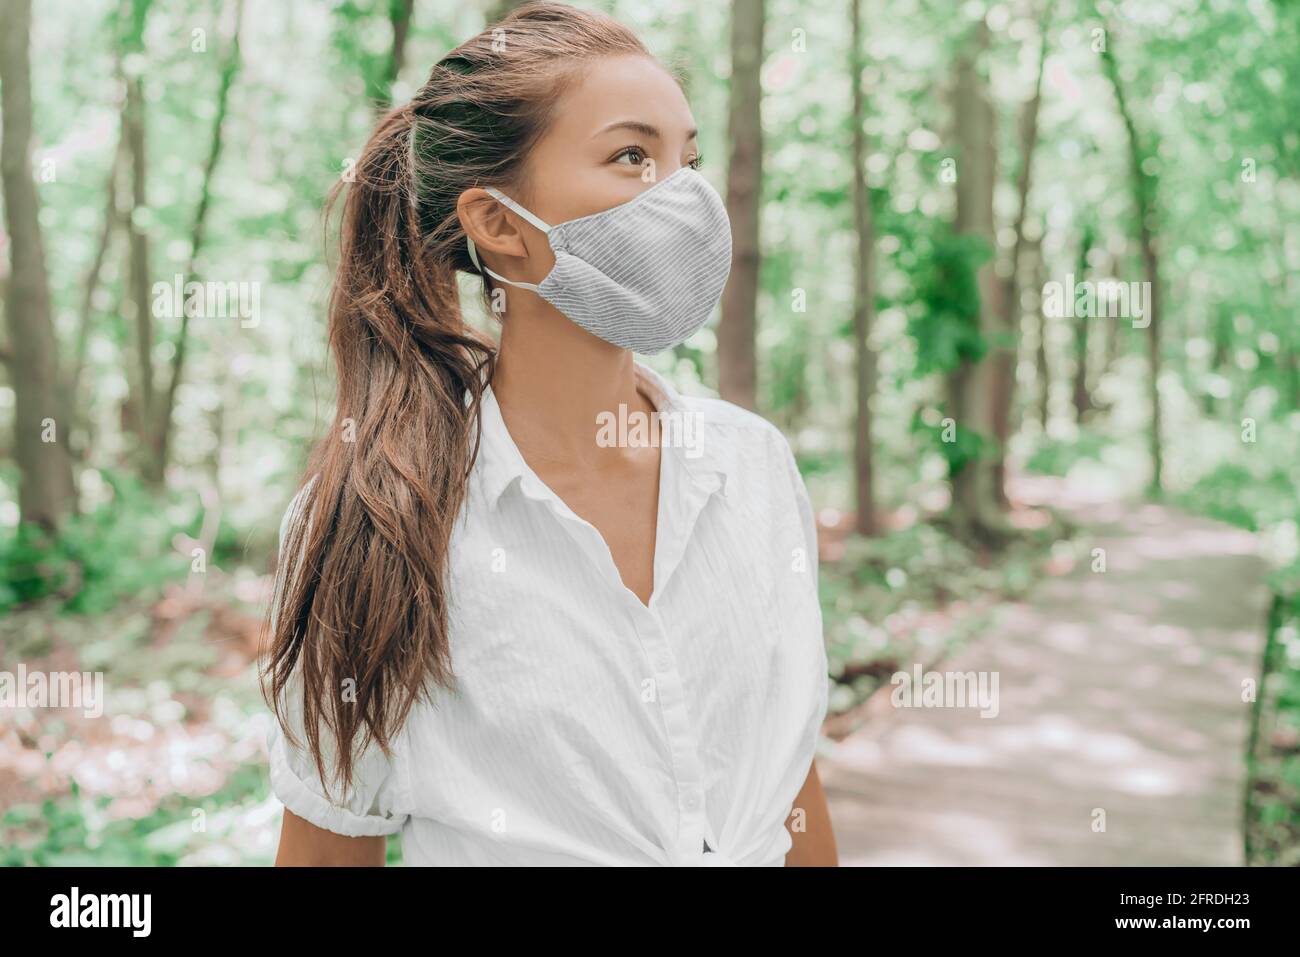 Asiatische Frau trägt Stoff ppe Gesichtsmaske Abdeckung Wandern in Sommer Wald Natur. Pandemischer Lebensstil des Coronavirus. Umweltfreundliches Umweltkonzept Stockfoto